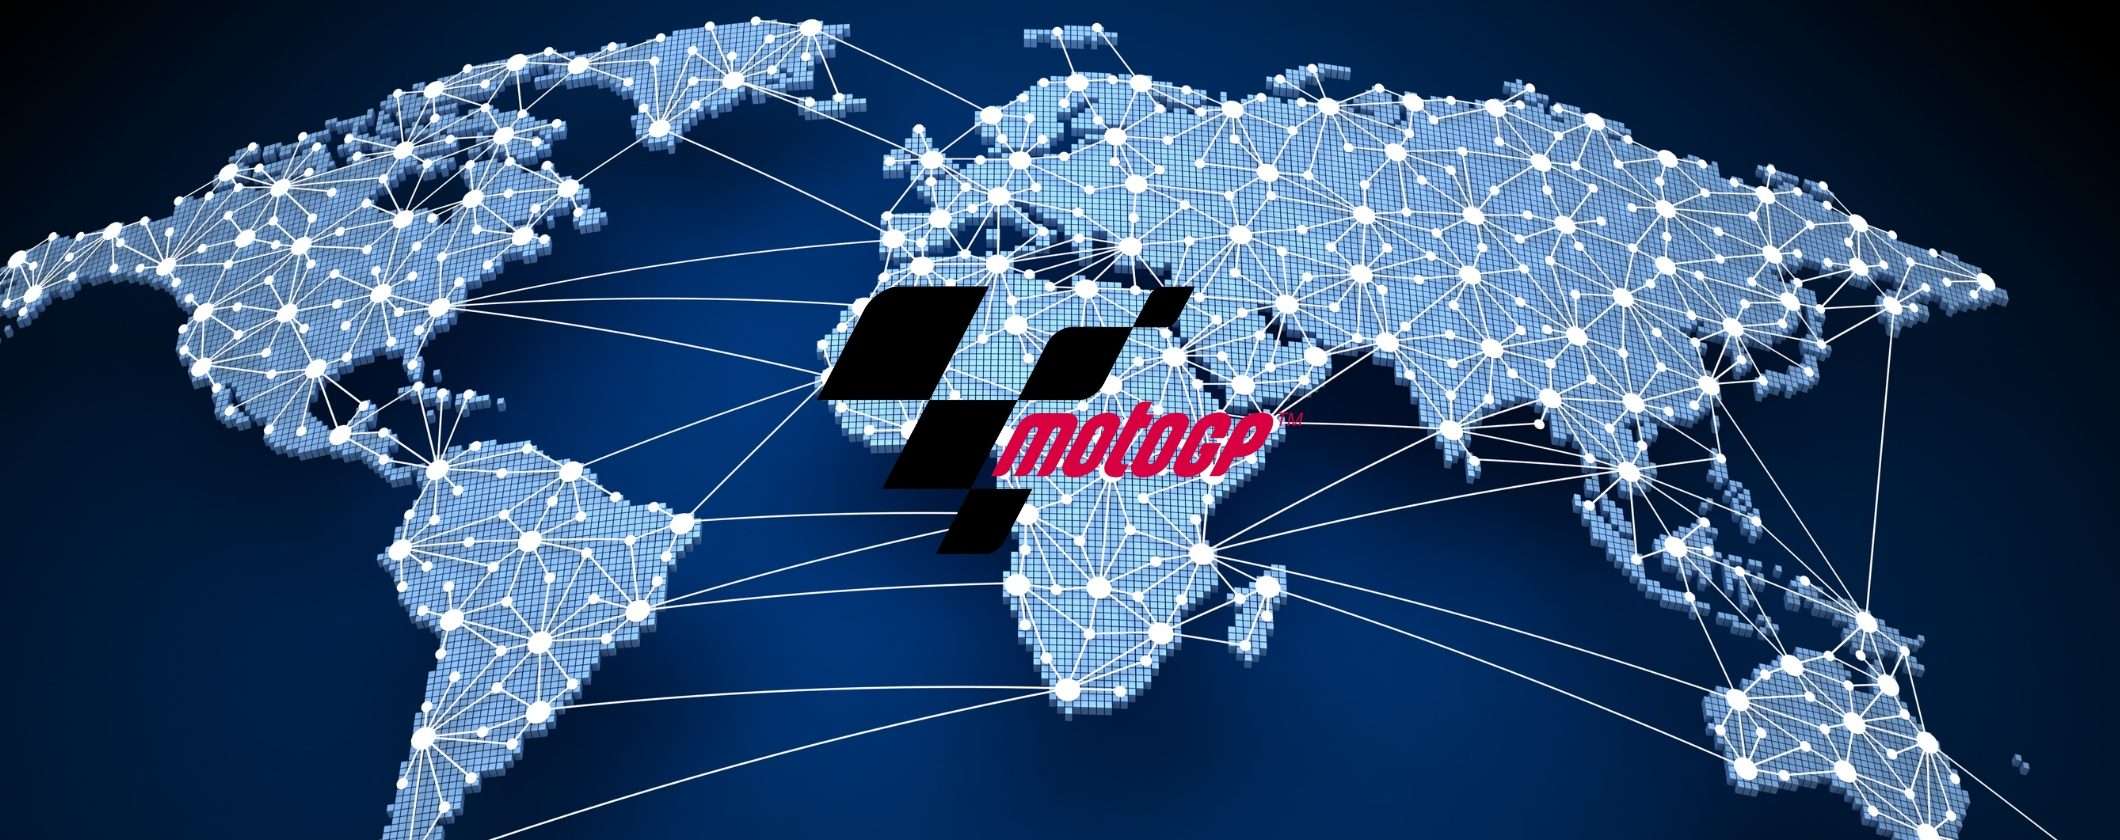 MotoGP dall'estero in streaming: ecco la soluzione perfetta